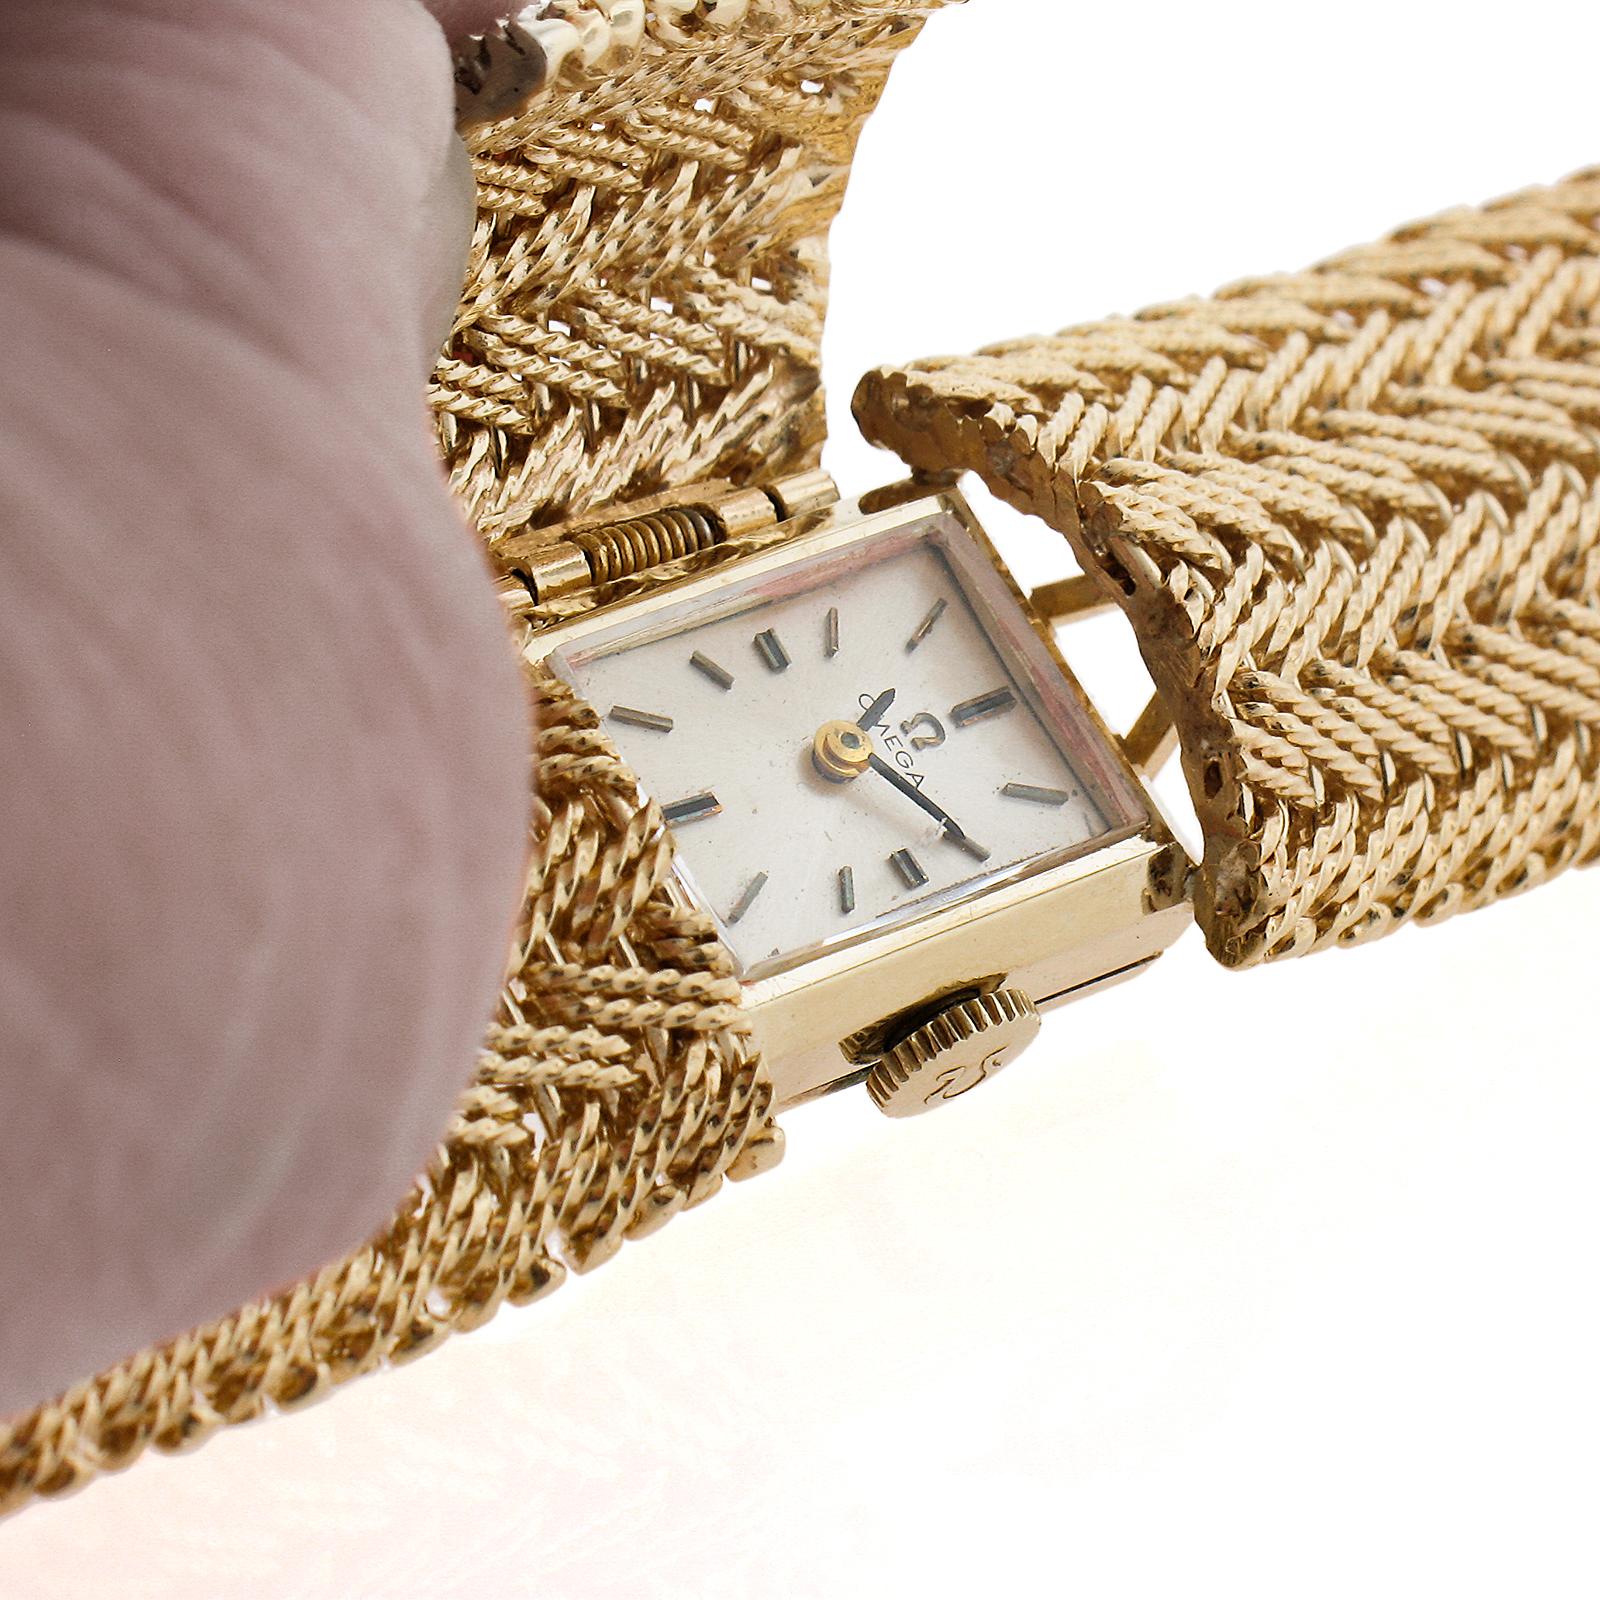 Horlogerie : Omega
Mouvement : Mécanique - 17 Jewell - Cal. 483
Boîtier, lunette et bracelet en or massif : Or jaune 14k massif
Poids : 59,7 grammes
Largeur : 19 mm (bracelet et boîtier)
Longueur du bracelet : S'adapte à un poignet de 6.5 pouces